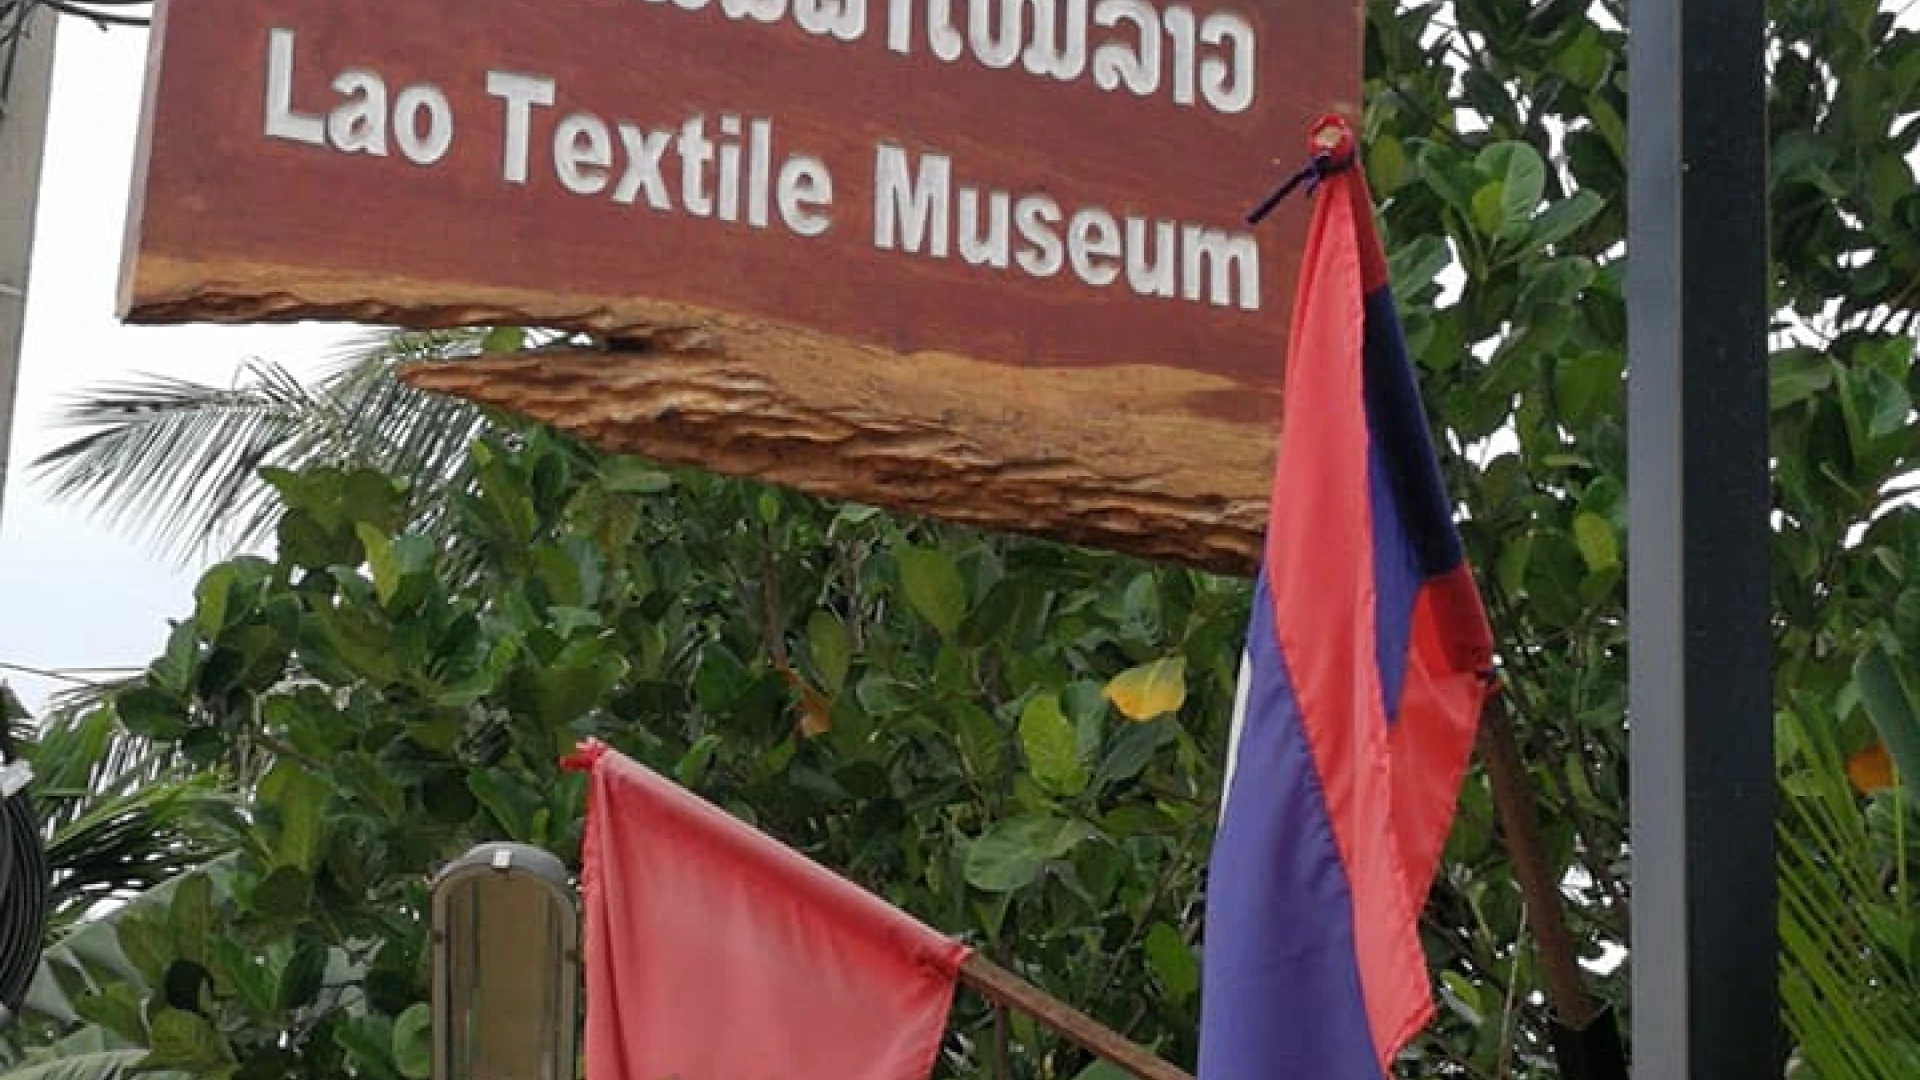 老挝纺织博物馆要做